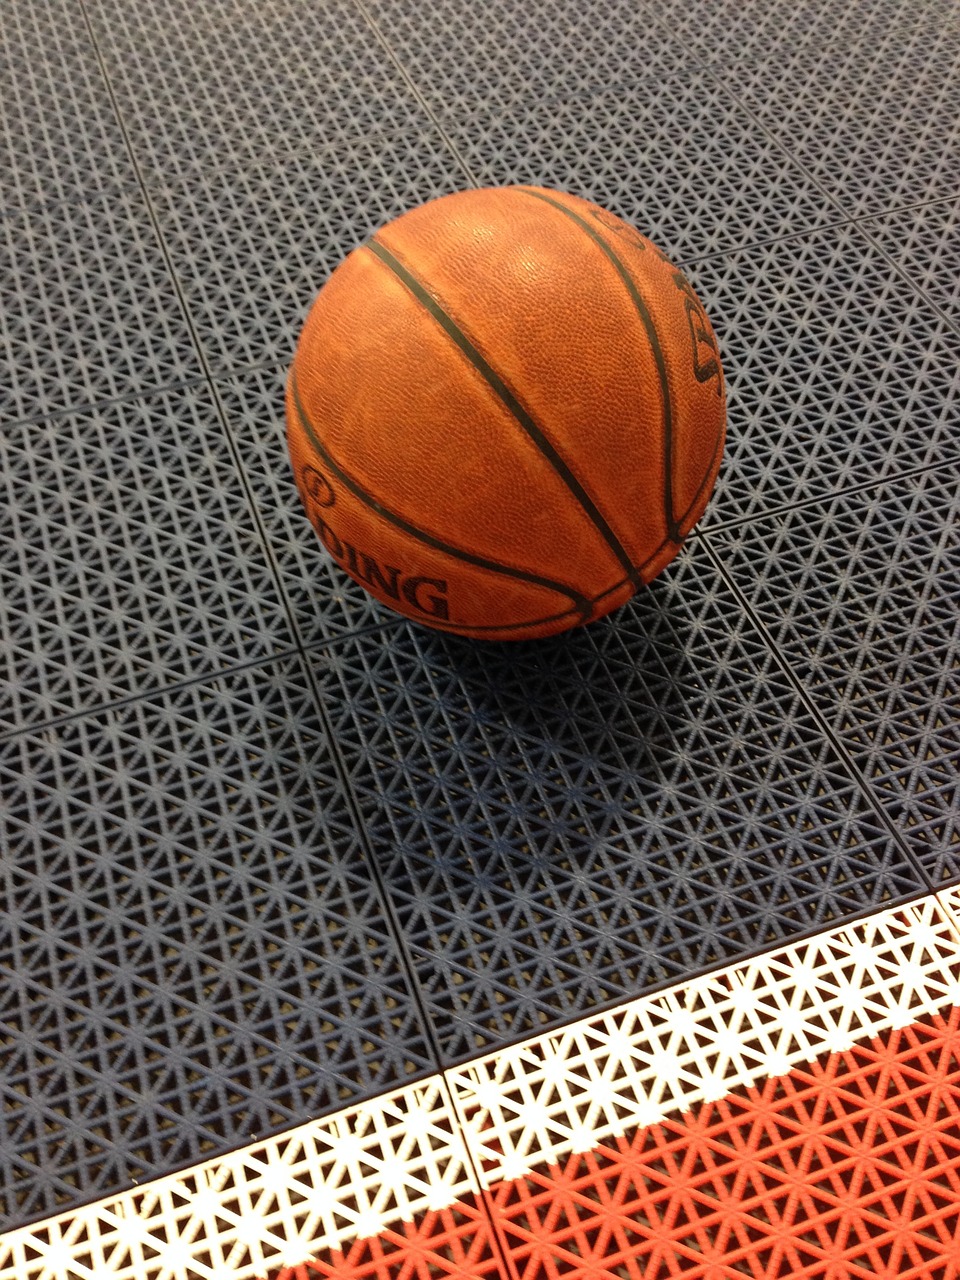 basketball sports ball free photo